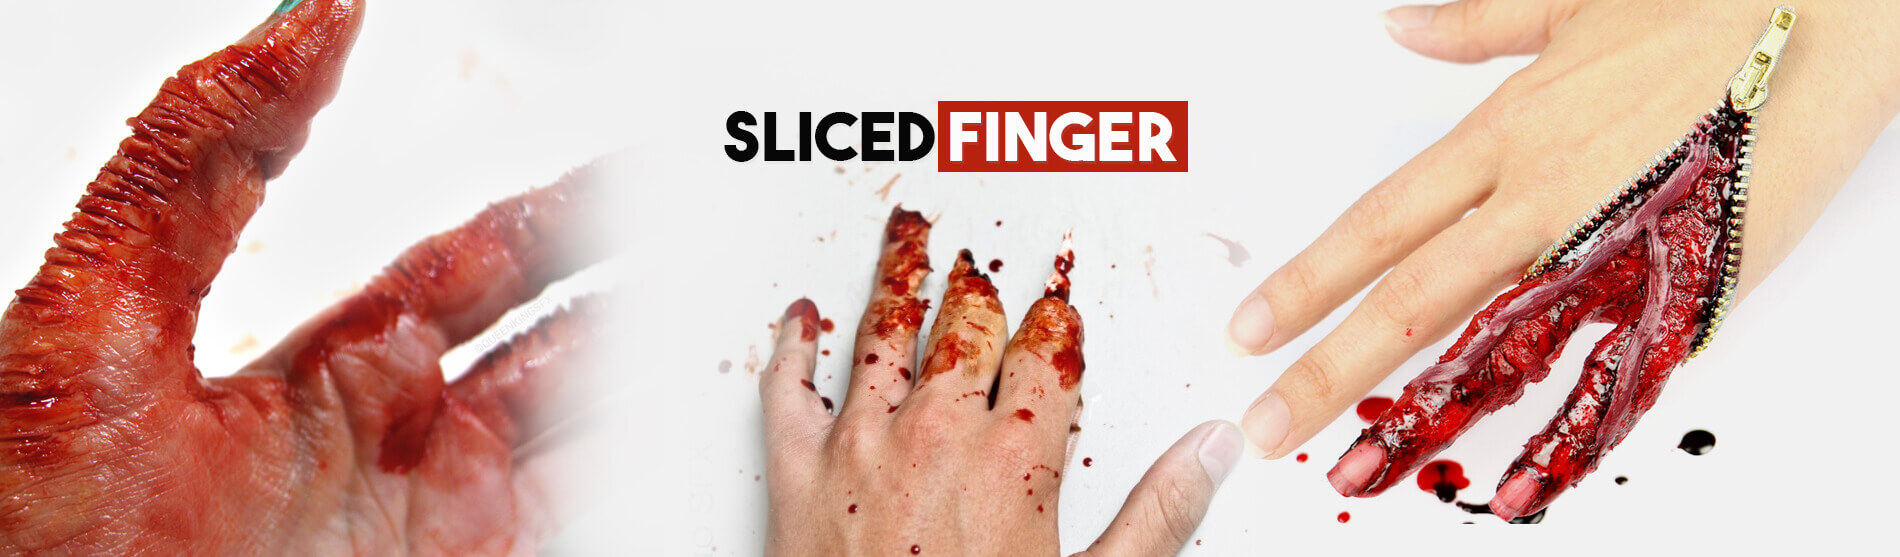 Glendale Halloween : Halloween-Sliced-Finger